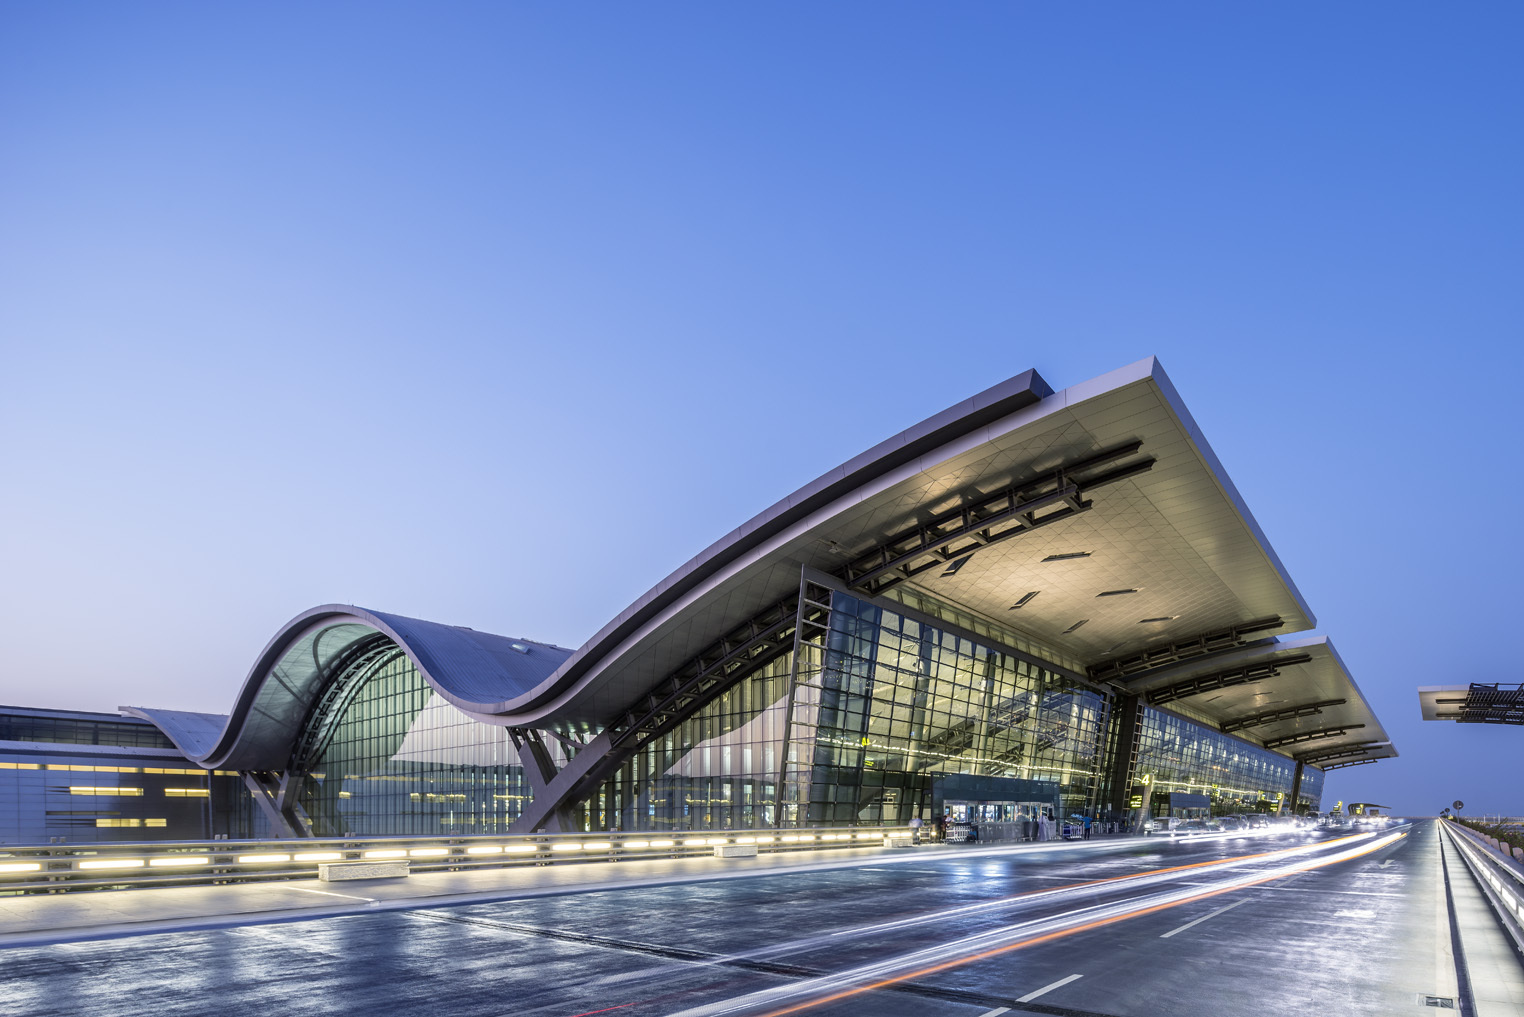 Galeria de Terminal do Aeroporto Internacional de Hamad / HOK - 1